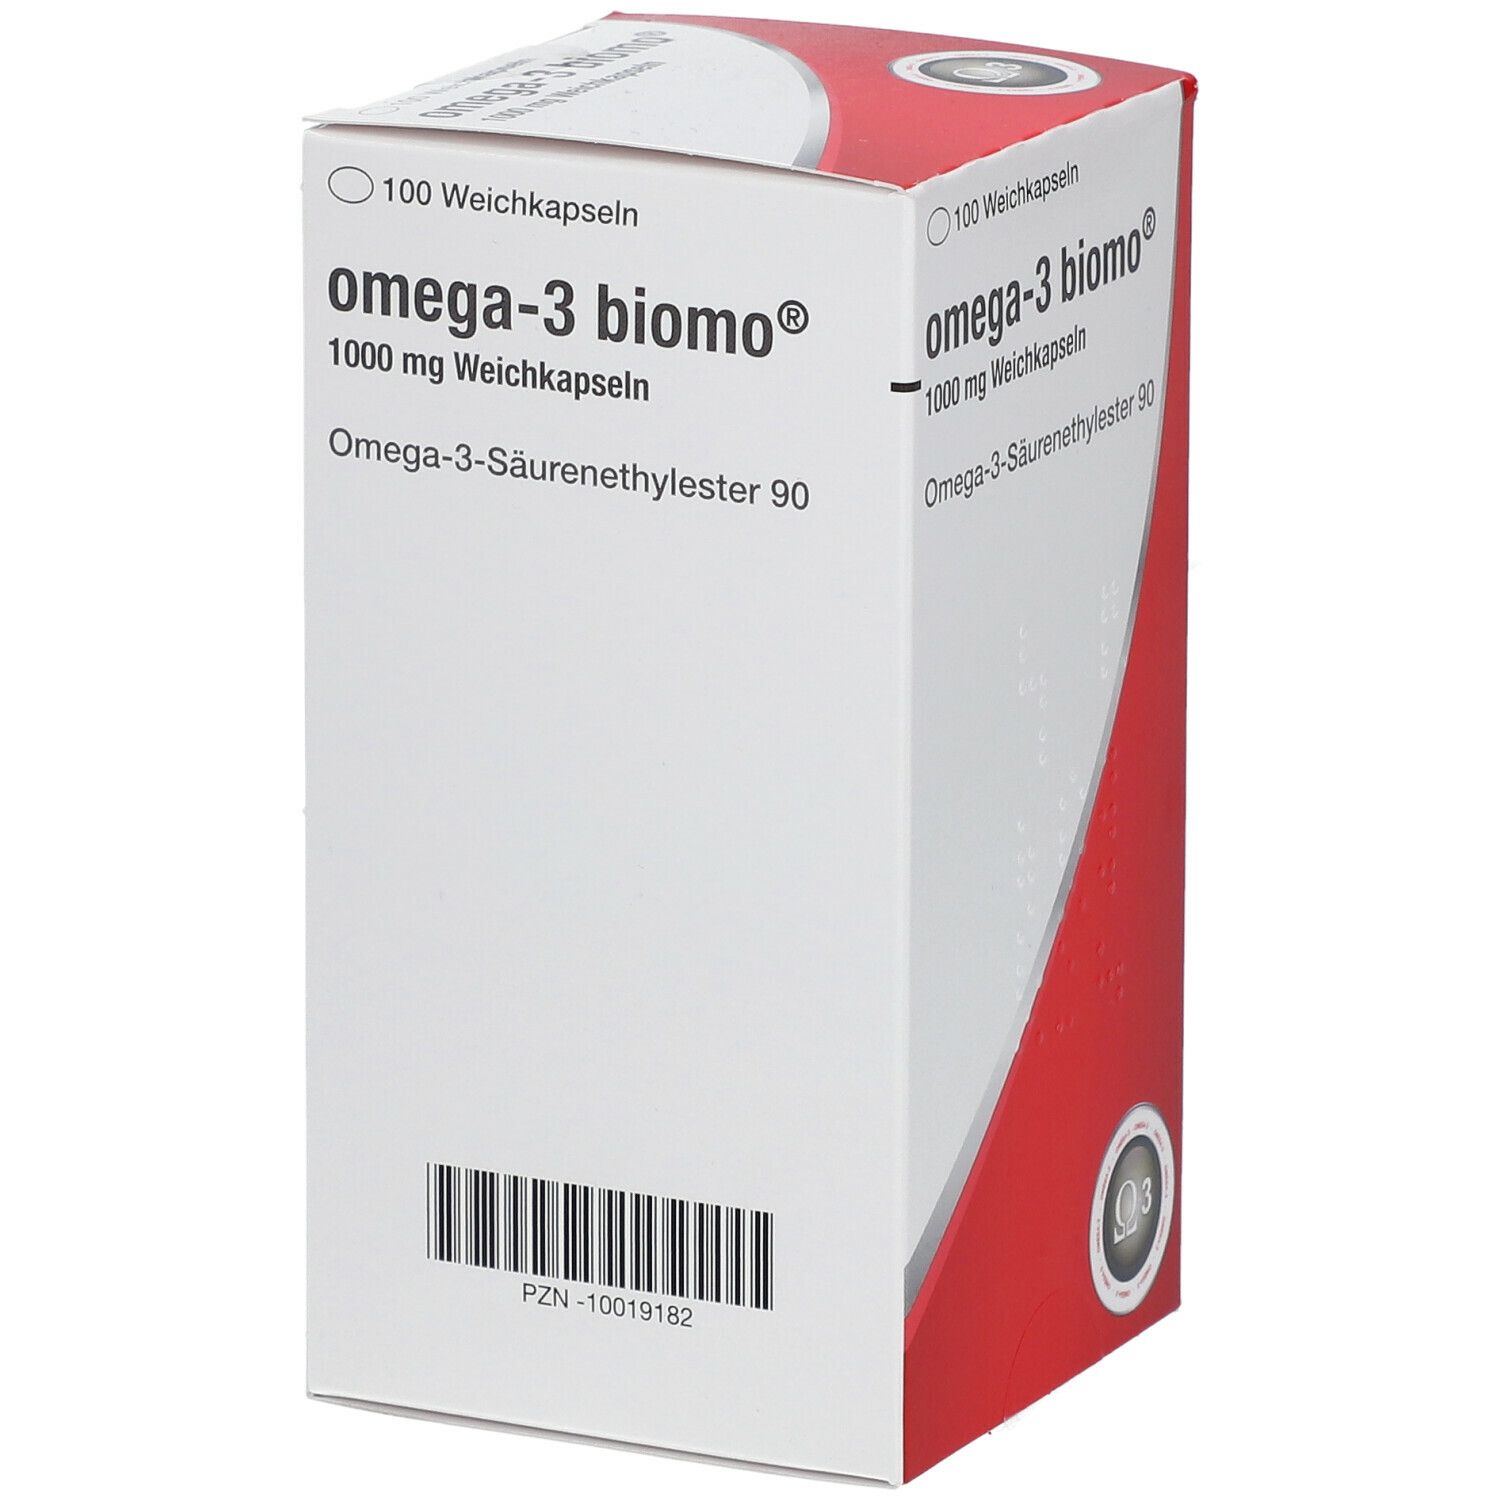 omega-3 biomo®